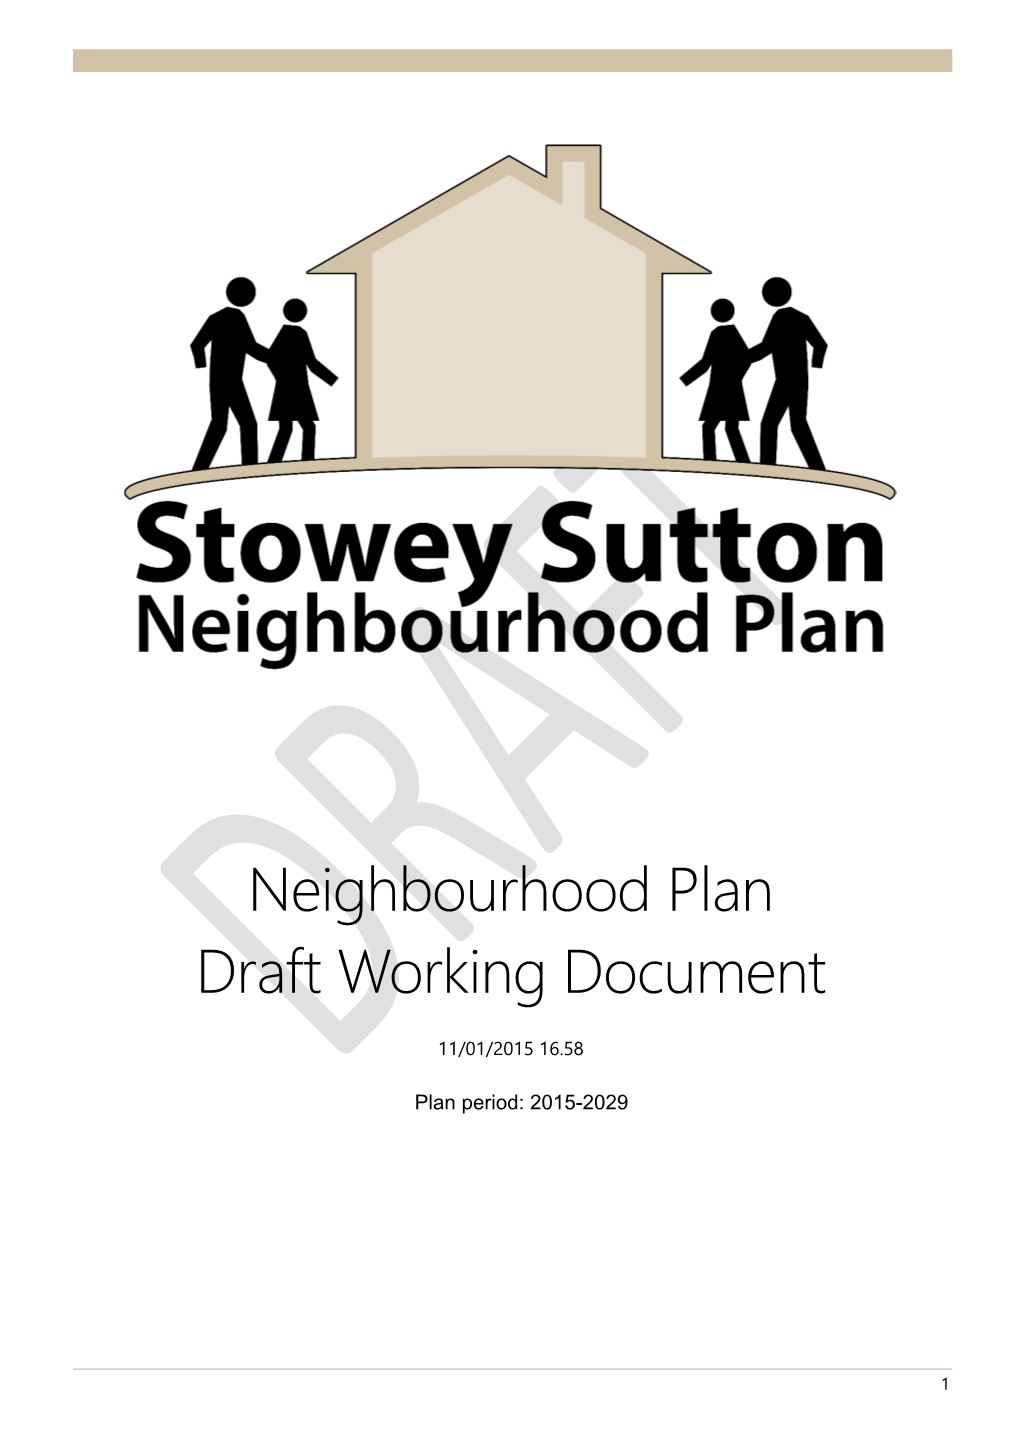 Stowey Sutton Neighbourhood Plan